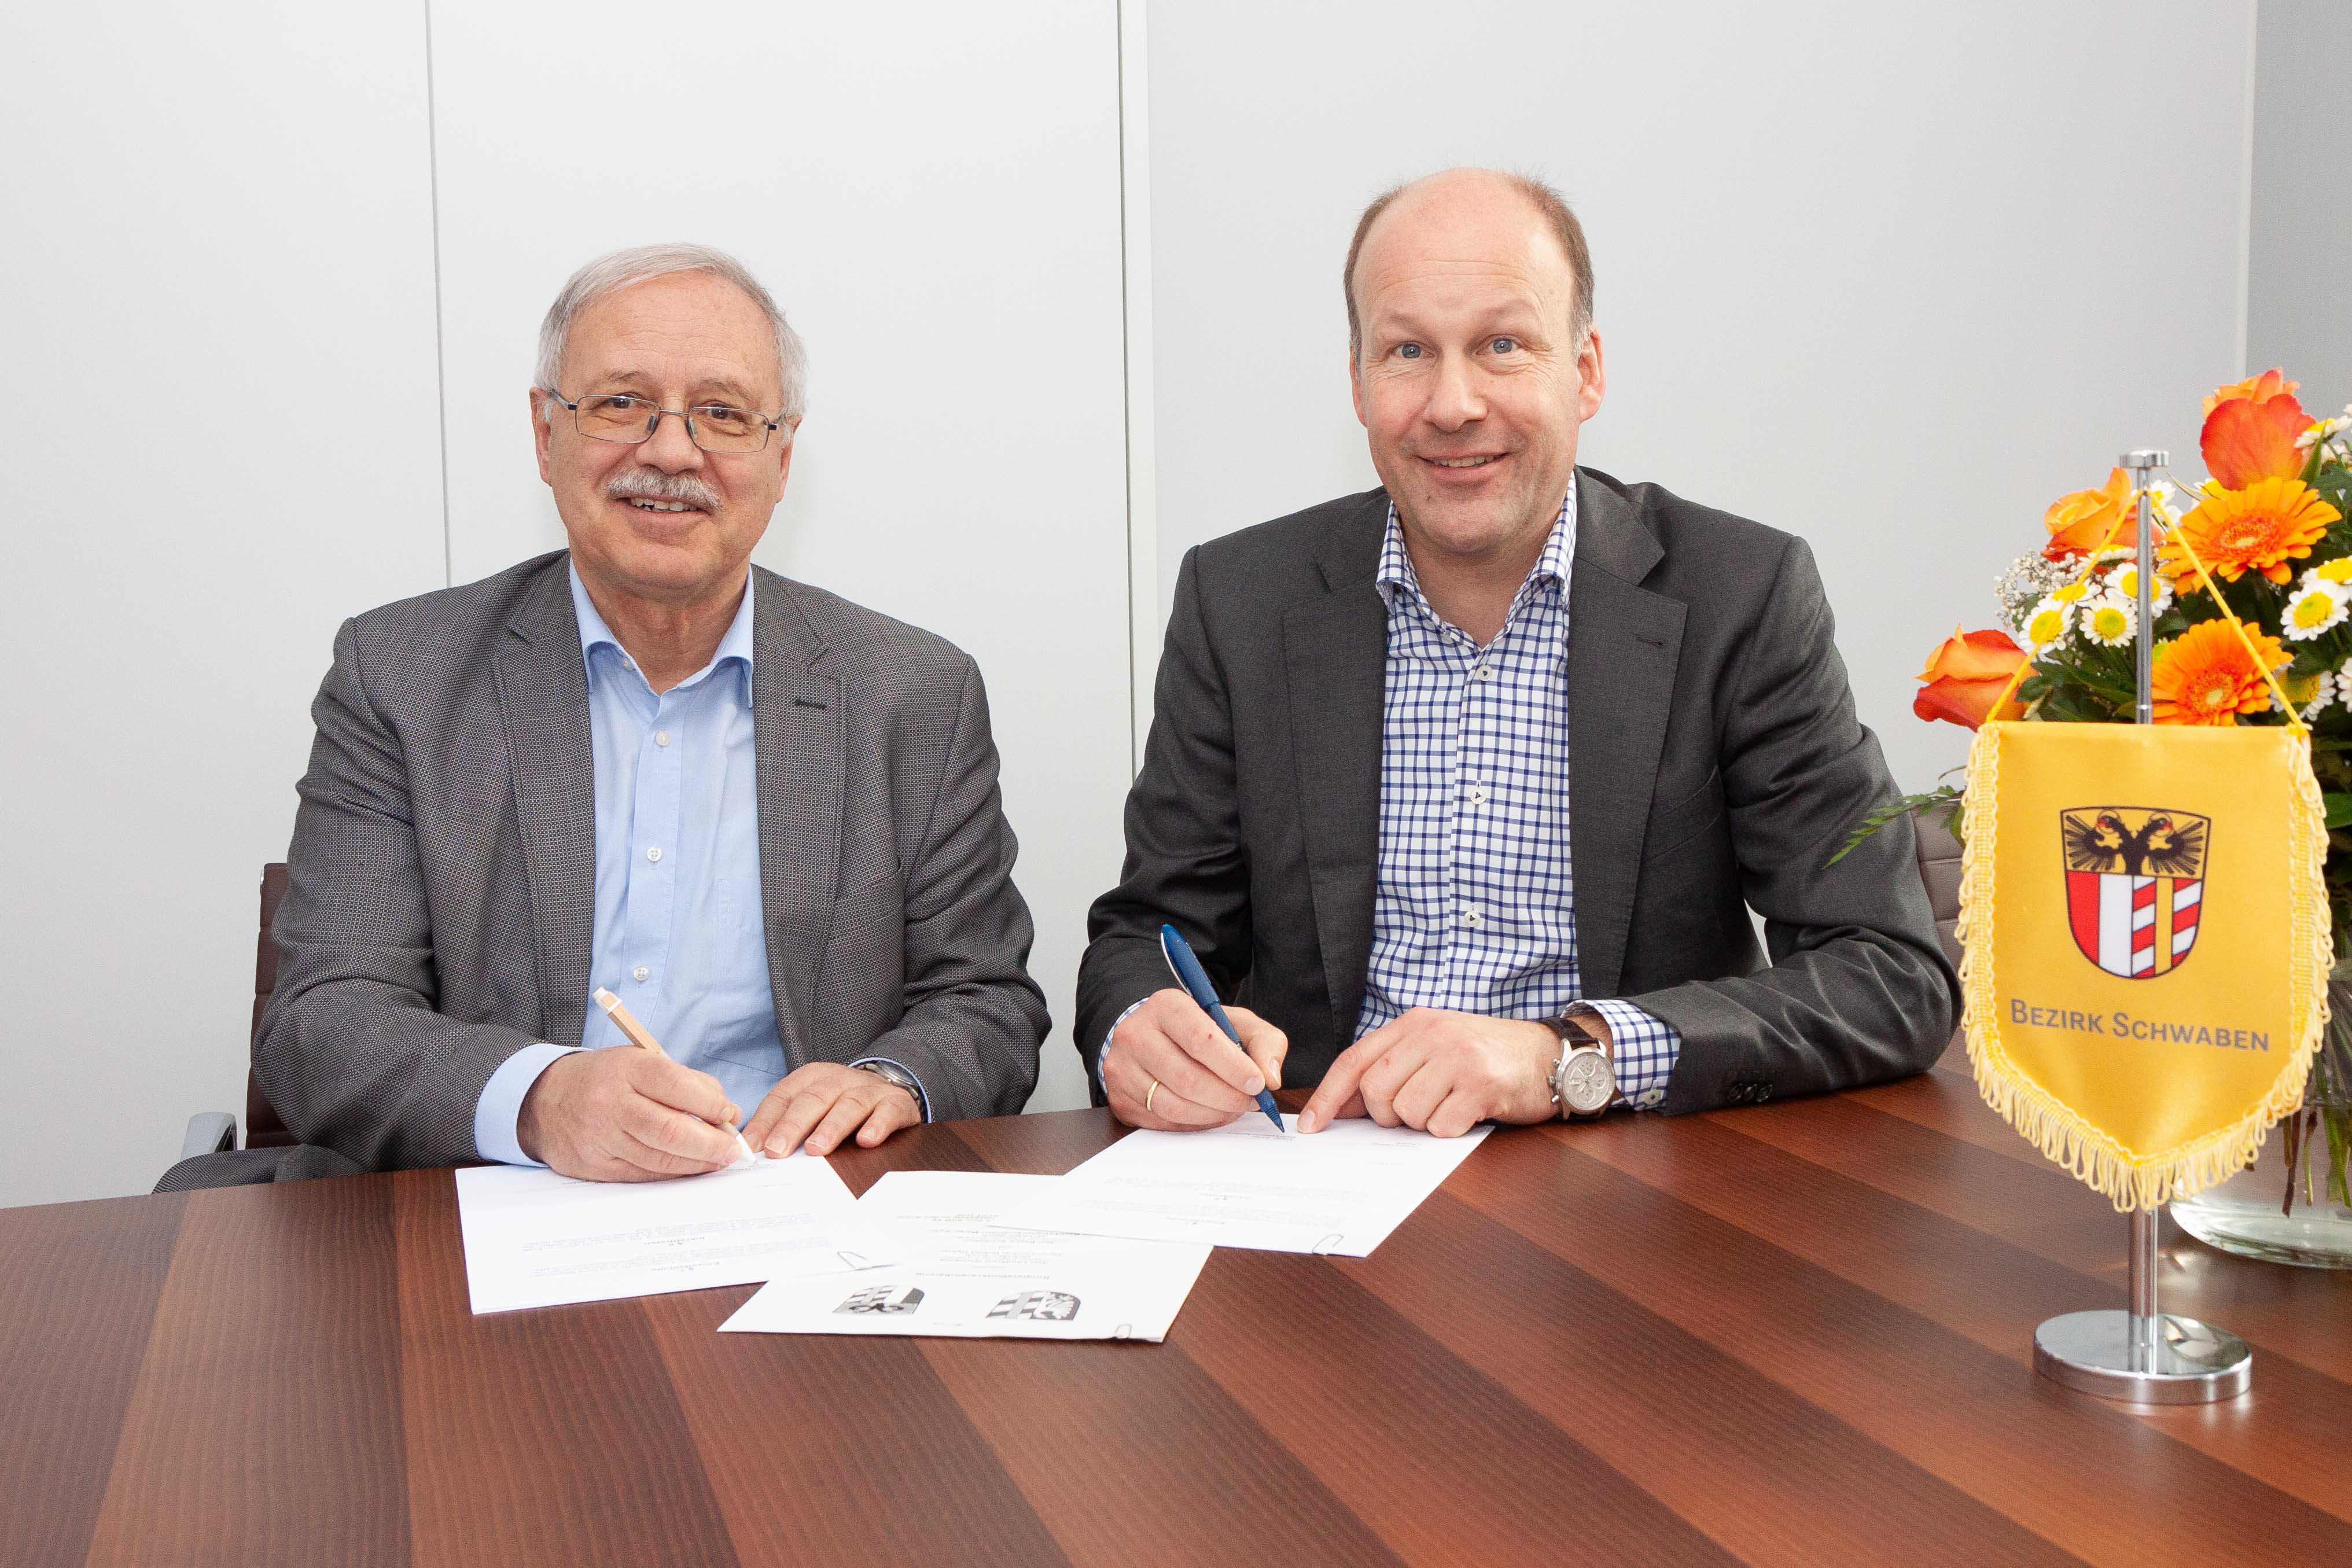 Für soziale Hilfen wie aus einer Hand  - Bezirk Schwaben und Landkreis Günzburg schließen Kooperationsvereinbarung